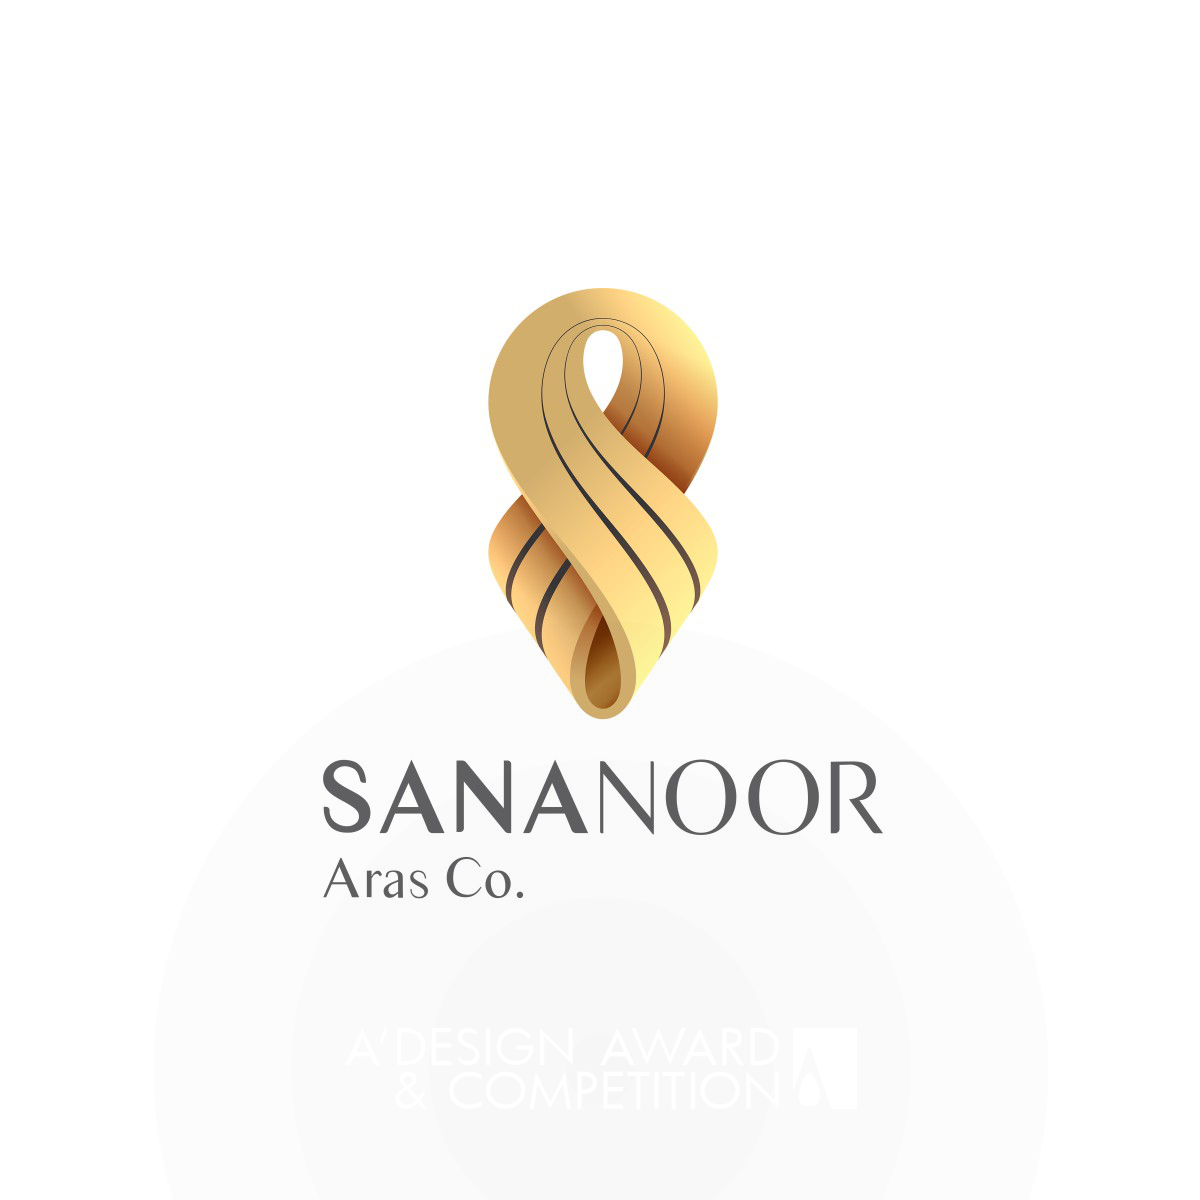 Sananoor Co. Corporate Identity